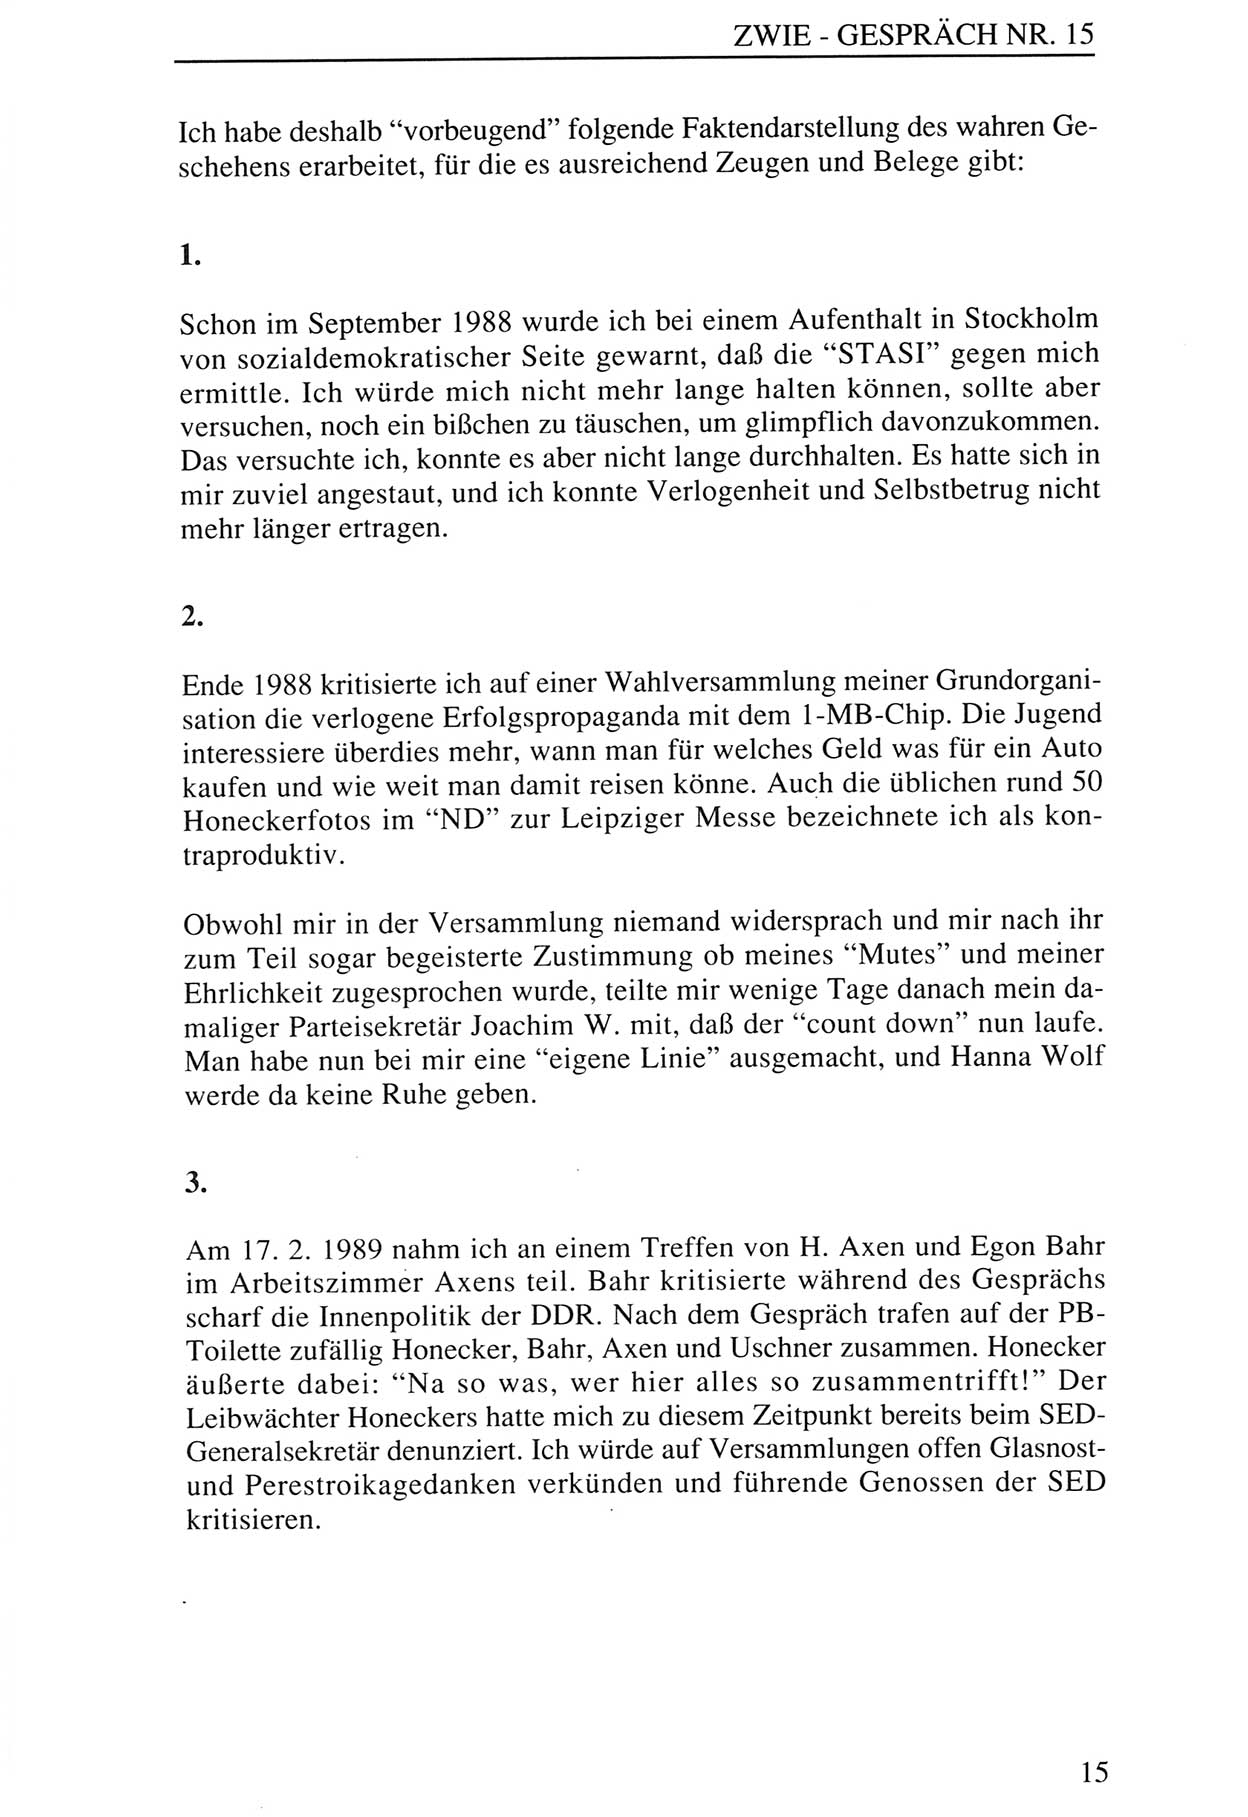 Zwie-Gespräch, Beiträge zur Aufarbeitung der Staatssicherheits-Vergangenheit [Deutsche Demokratische Republik (DDR)], Ausgabe Nr. 15, Berlin 1993, Seite 15 (Zwie-Gespr. Ausg. 15 1993, S. 15)